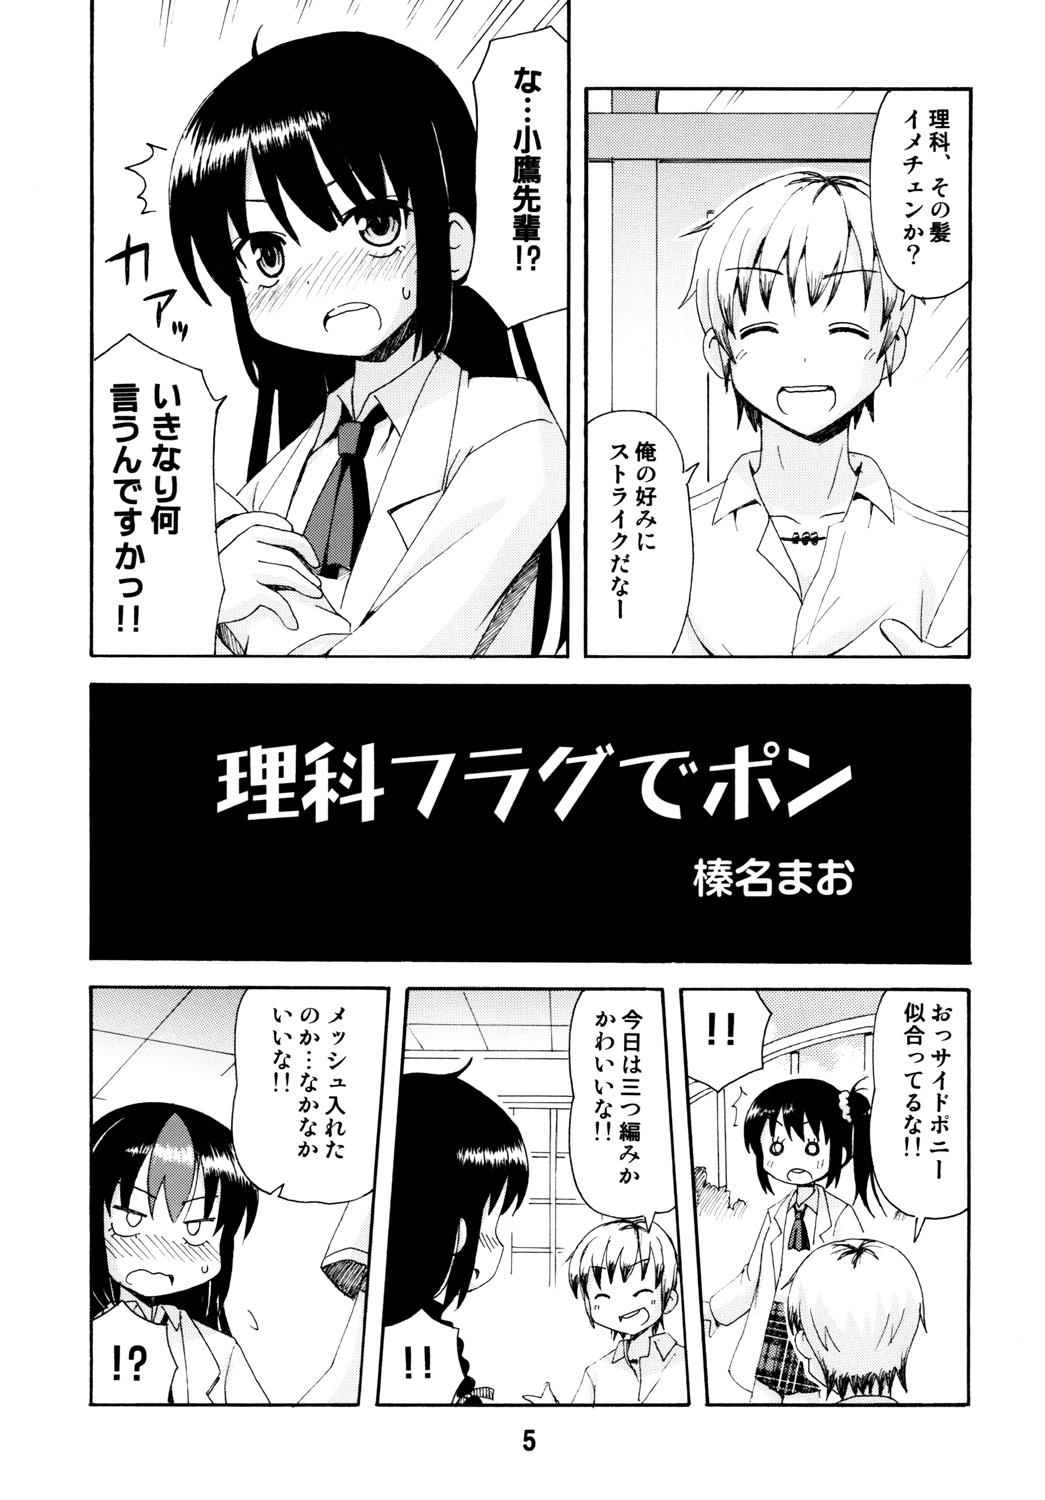 Suck Haganaix - Boku wa tomodachi ga sukunai Storyline - Page 4